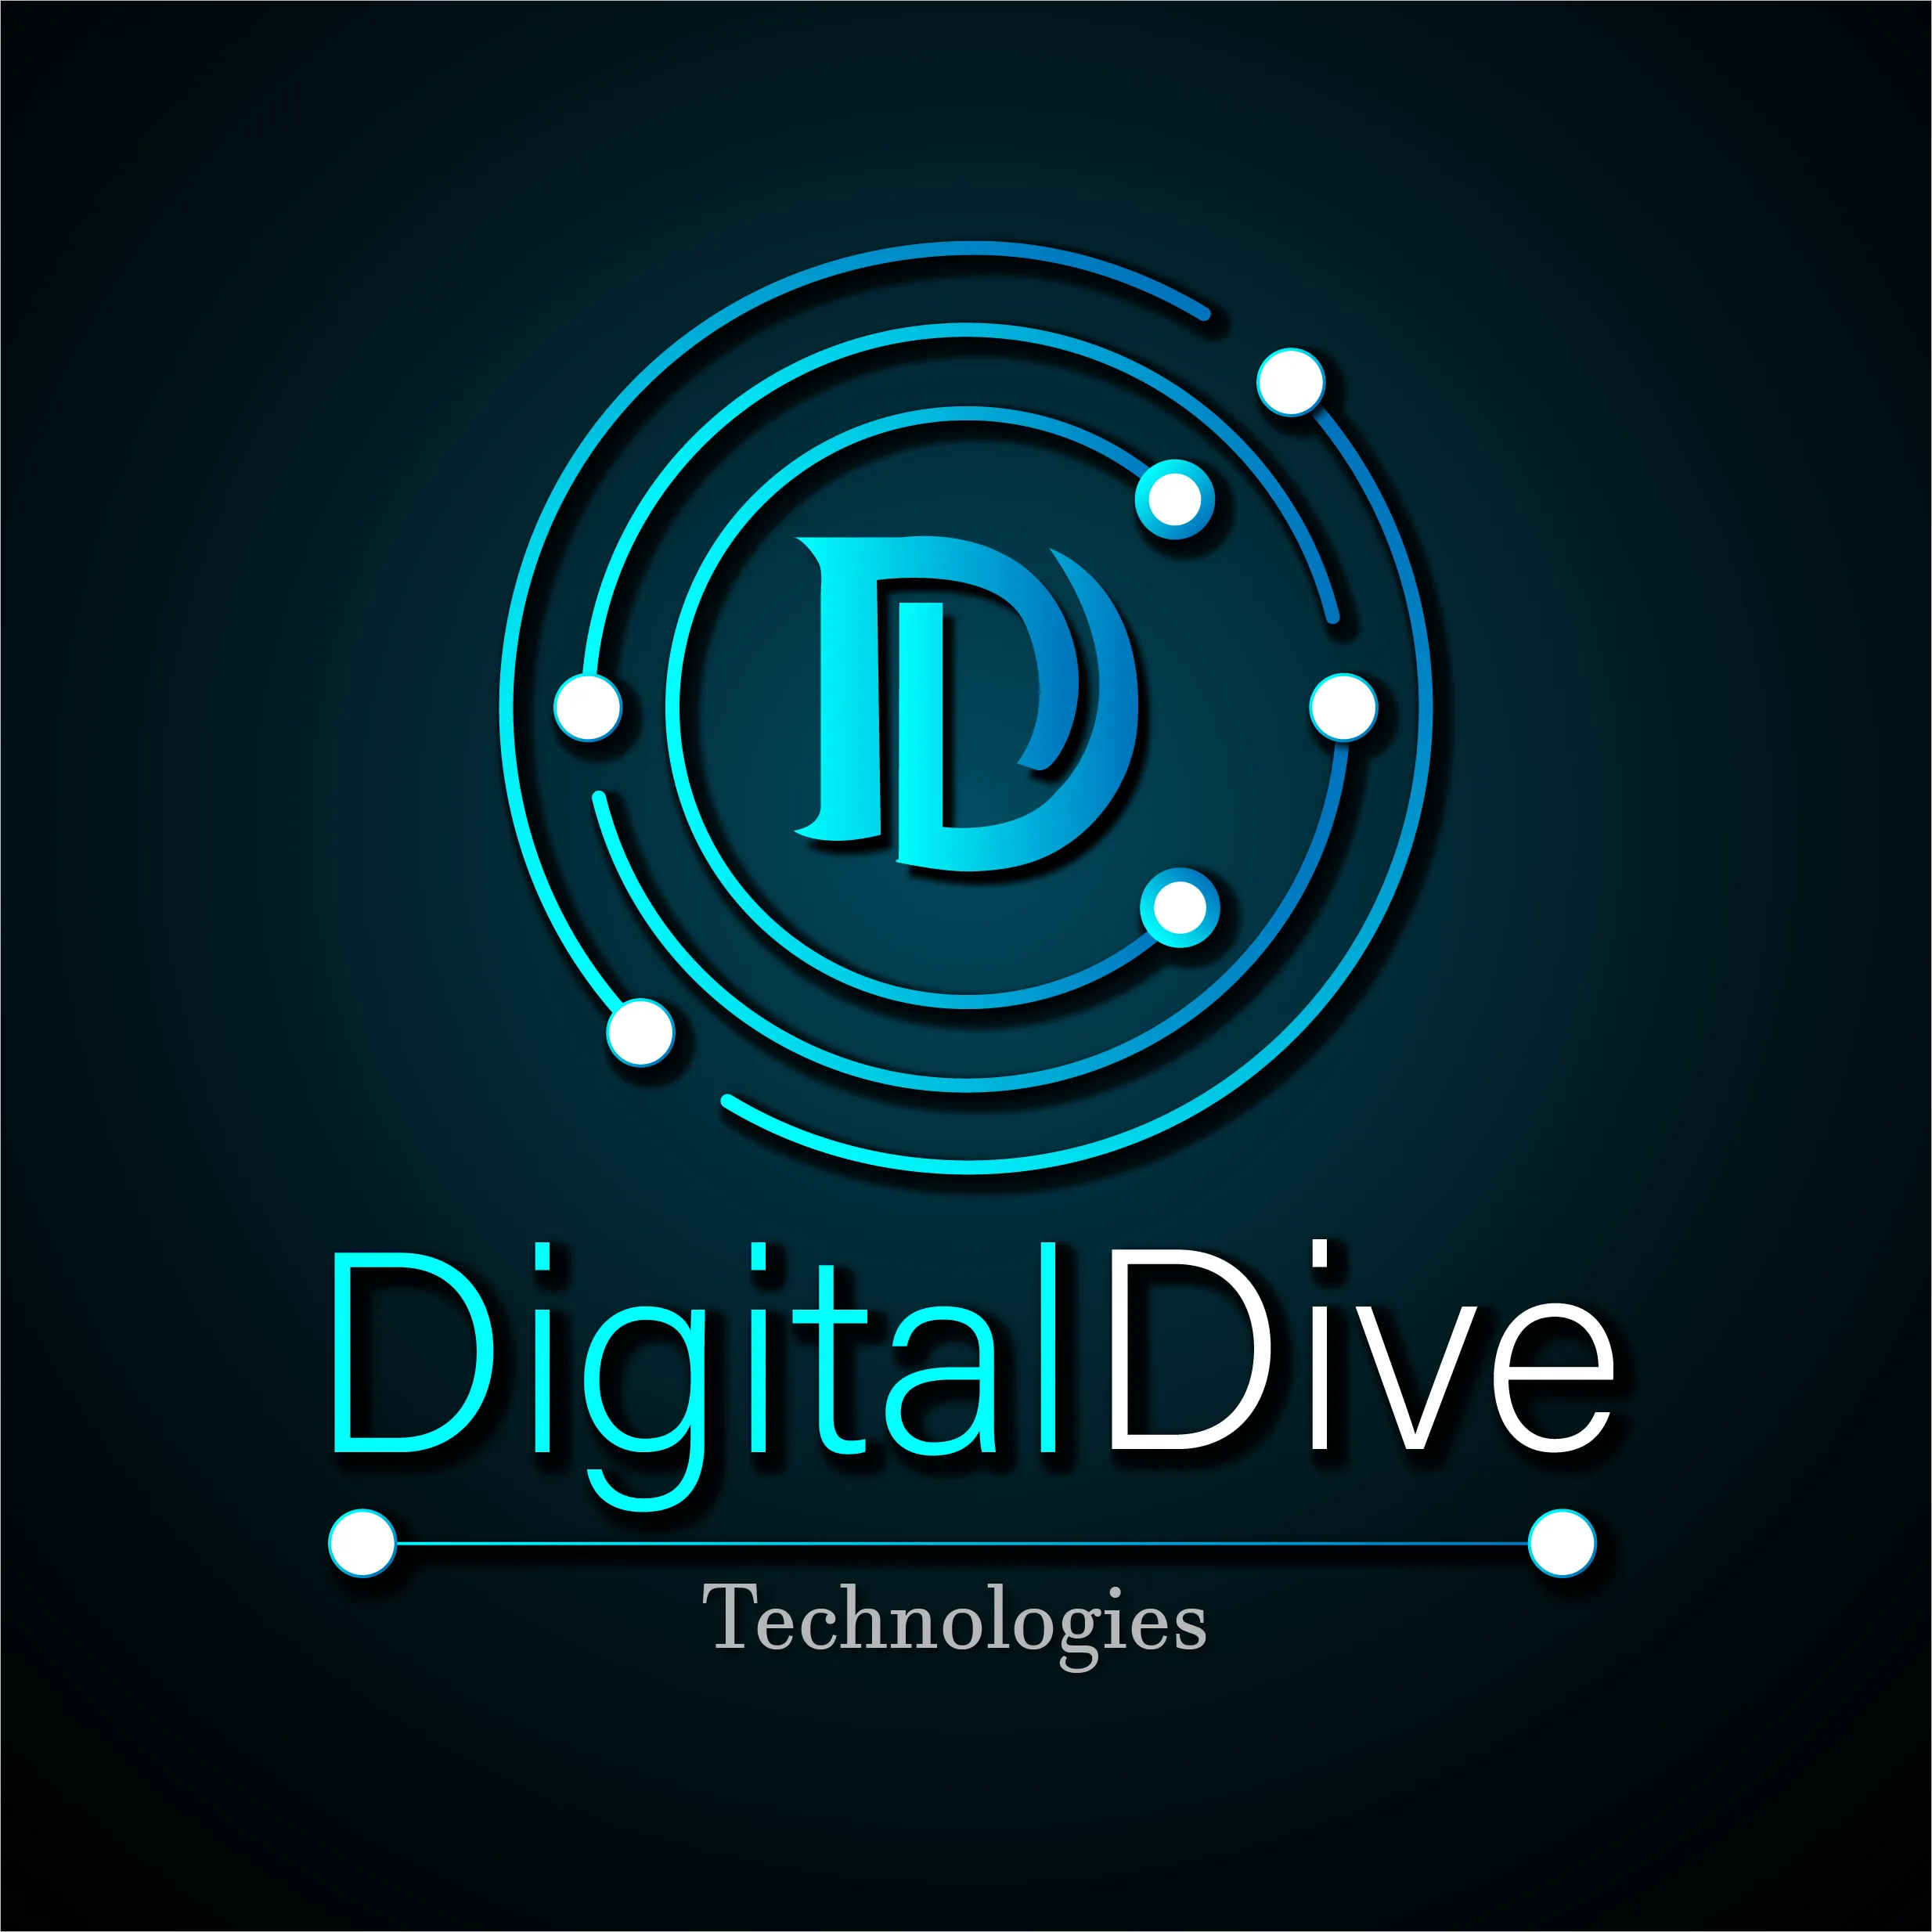 Digital Dive